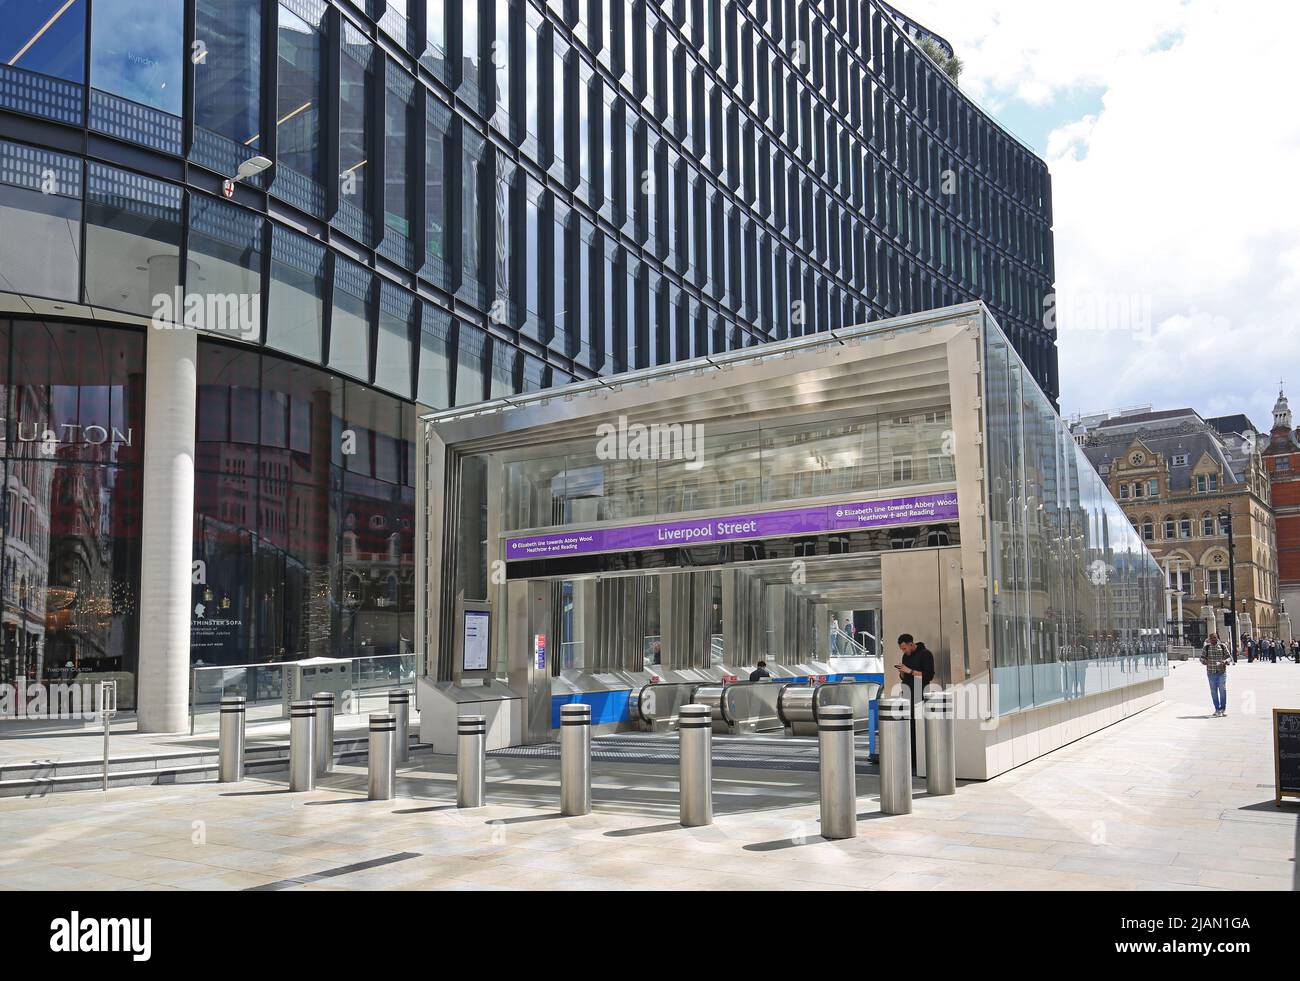 Londres, la recién inaugurada Elizabeth Line (Crossrail). Entrada en planta baja en la estación de Liverpool Street. Nuevo vestíbulo con escaleras mecánicas acristaladas. Foto de stock